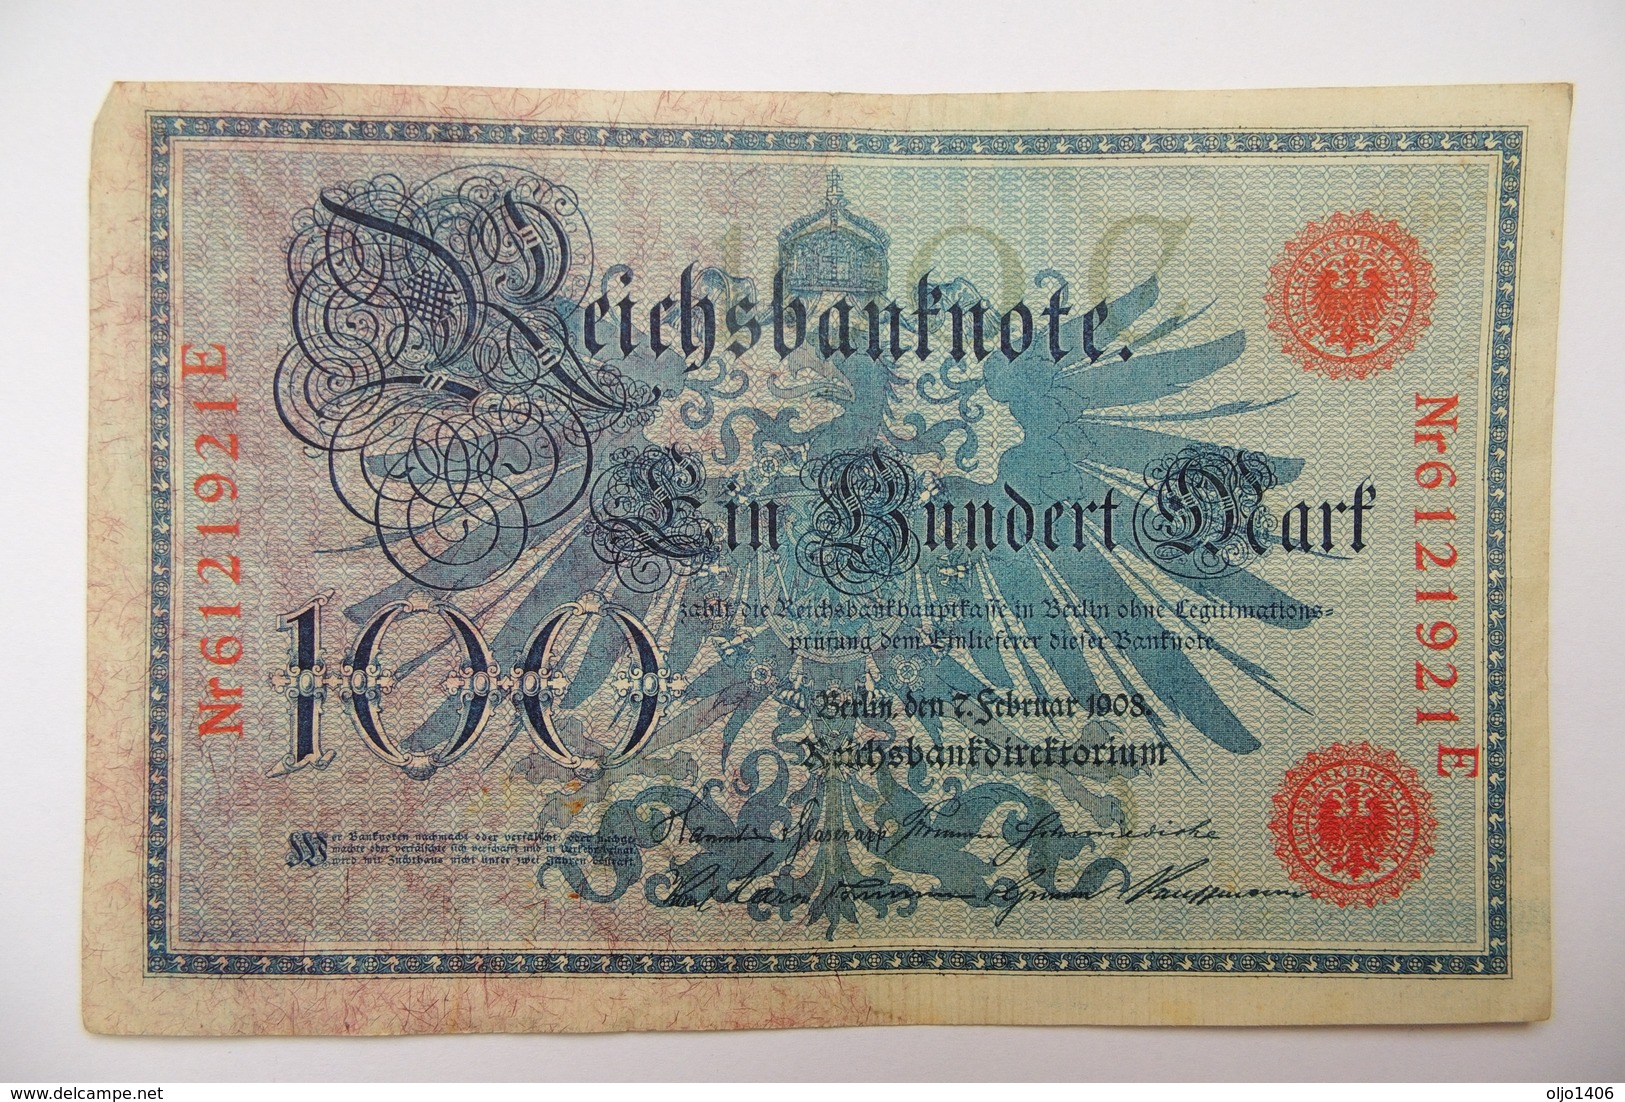 Ein-Hundert-Mark-7-Februar-1908-Deutsche-Reich-Reichsbankdirektorium -100 - 100 Mark